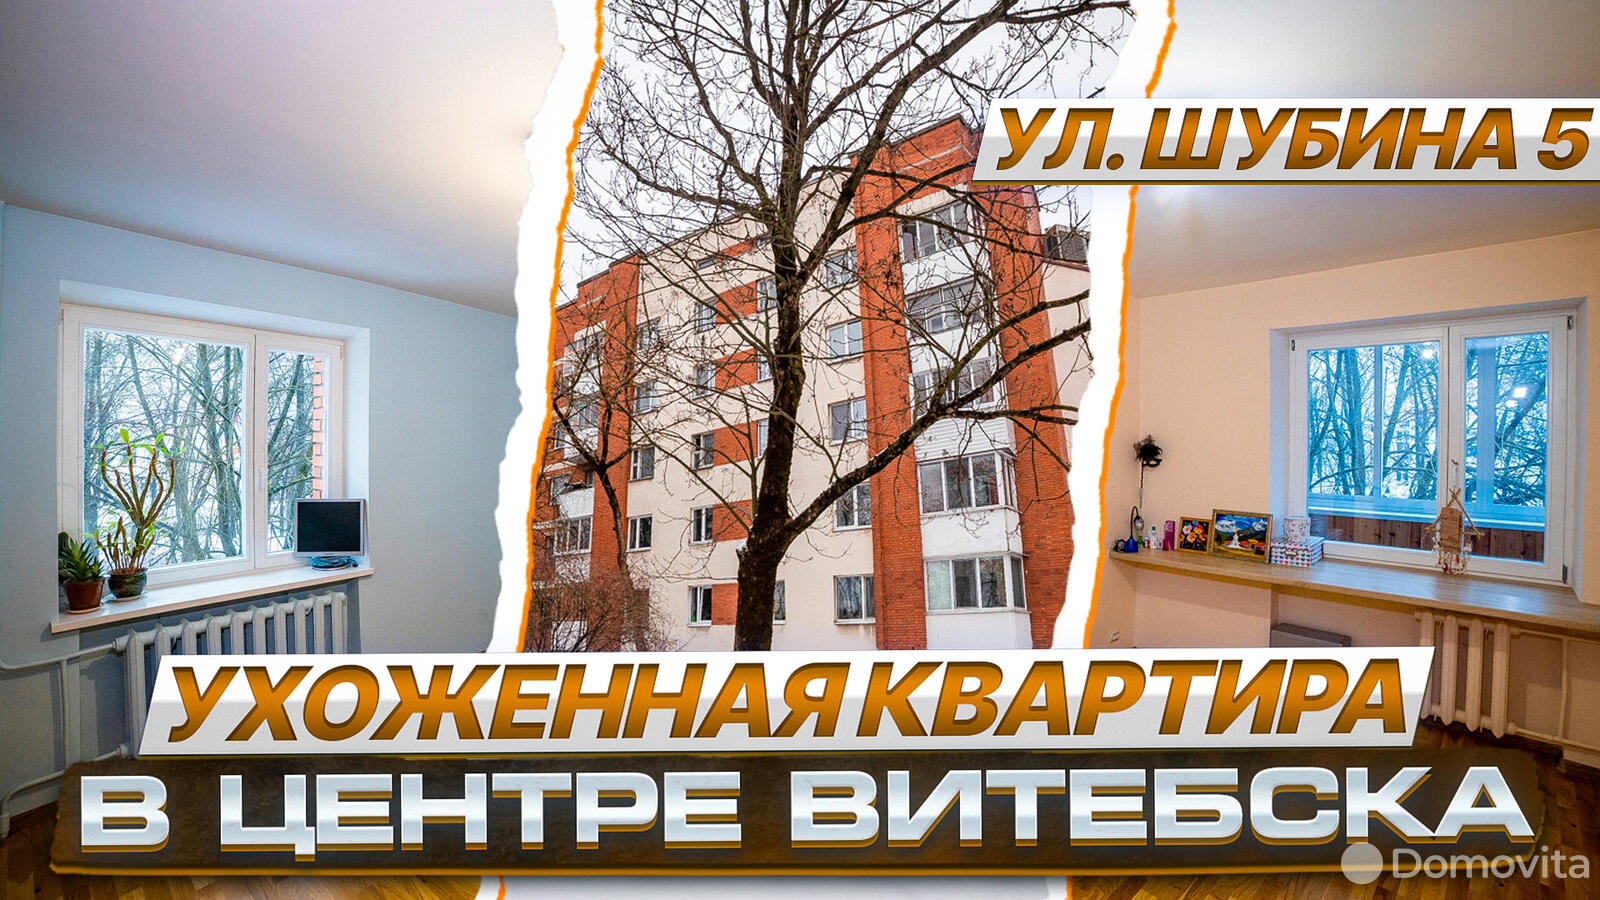 Стоимость продажи квартиры, Витебск, ул. Шубина, д. 5